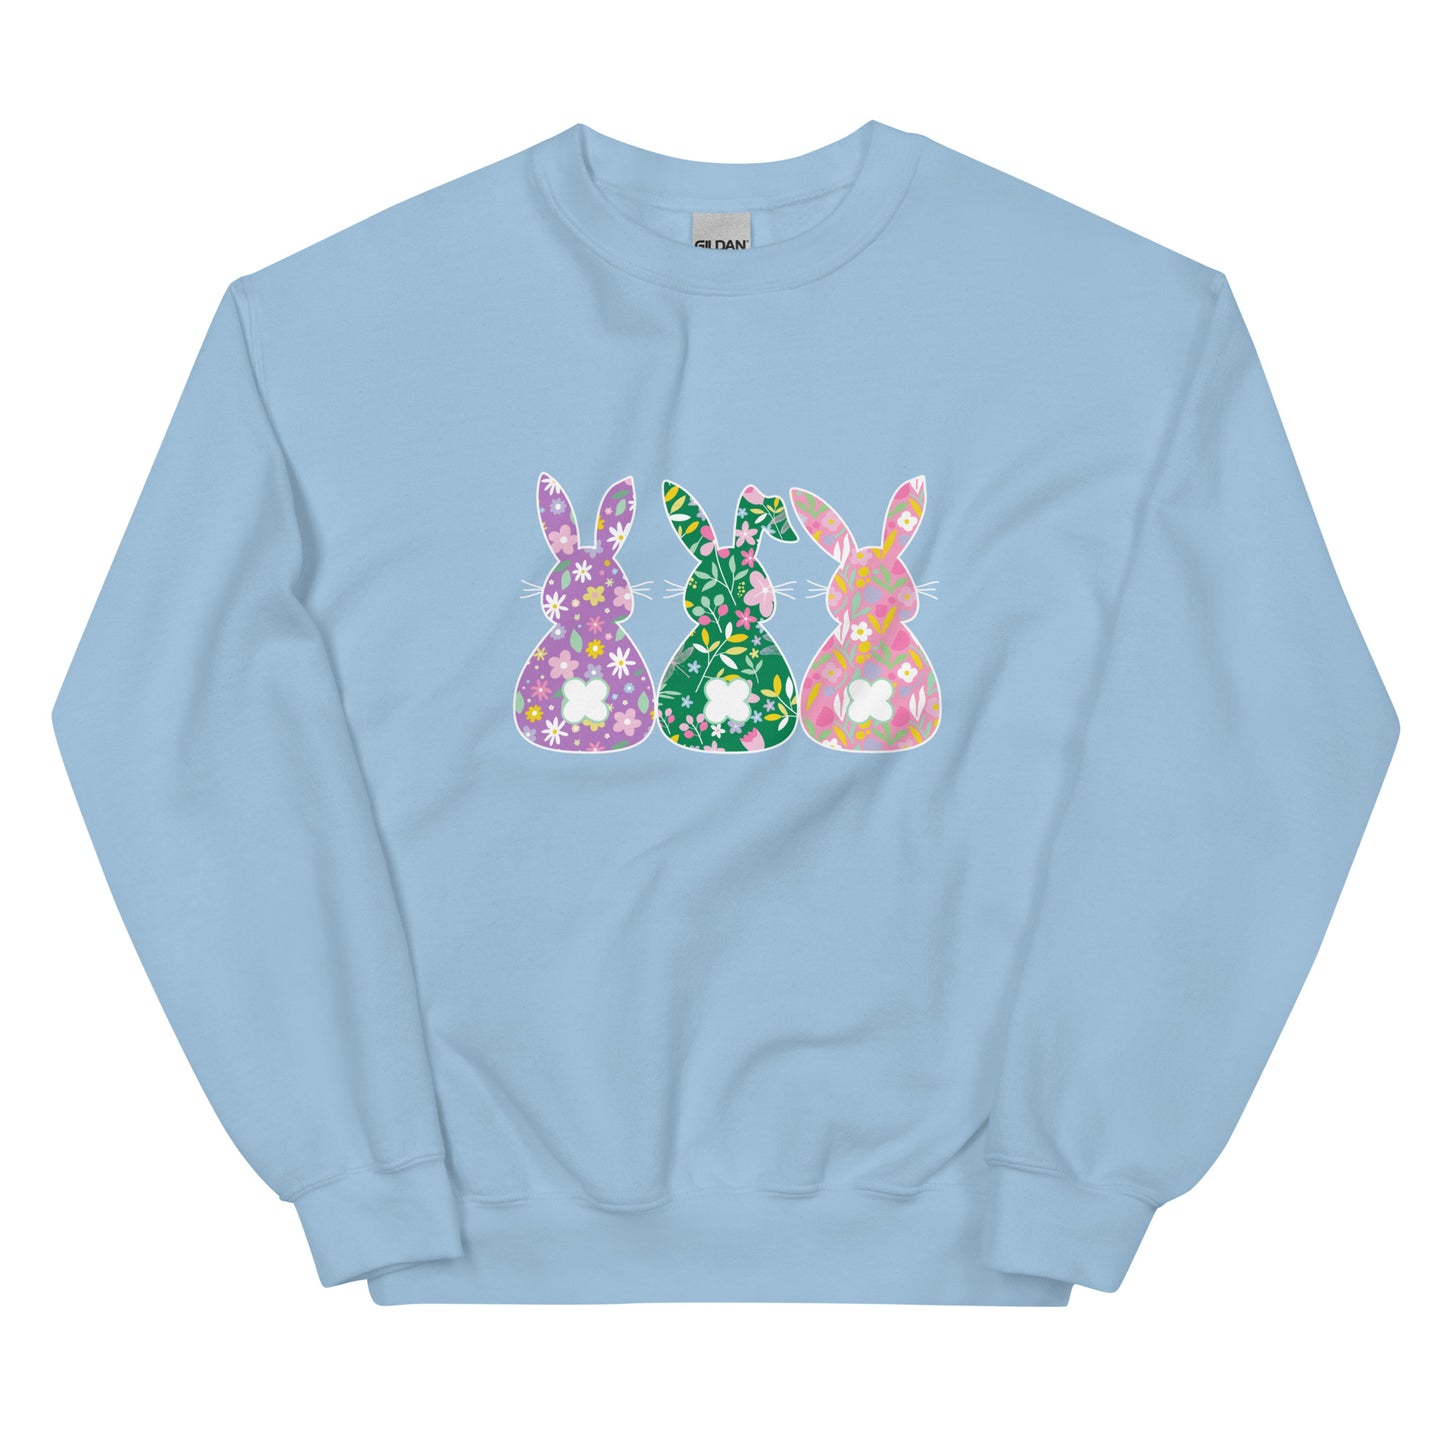 Whimsical Bunnies Crewneck Sweatshirt